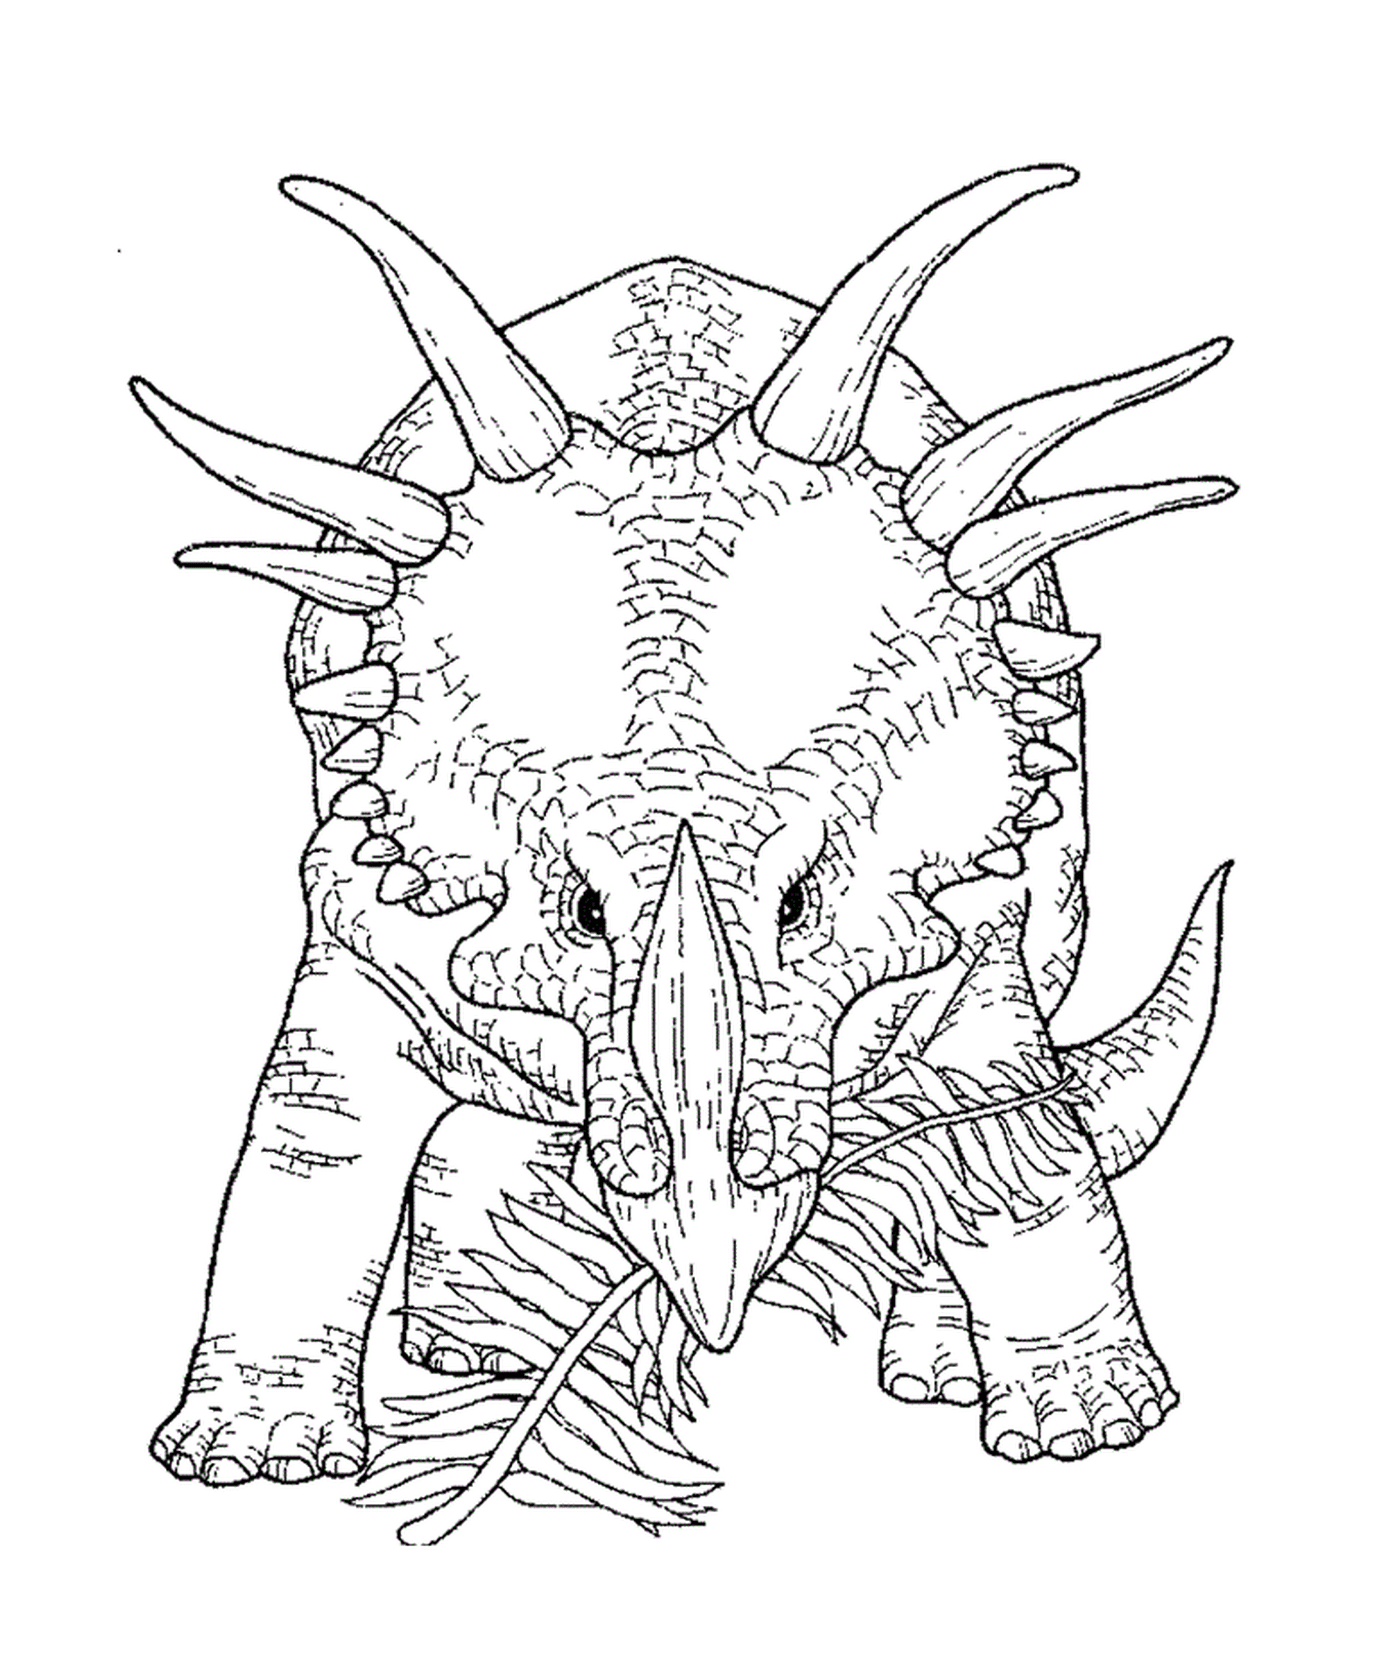  Un triceratops adulto en exhibición 